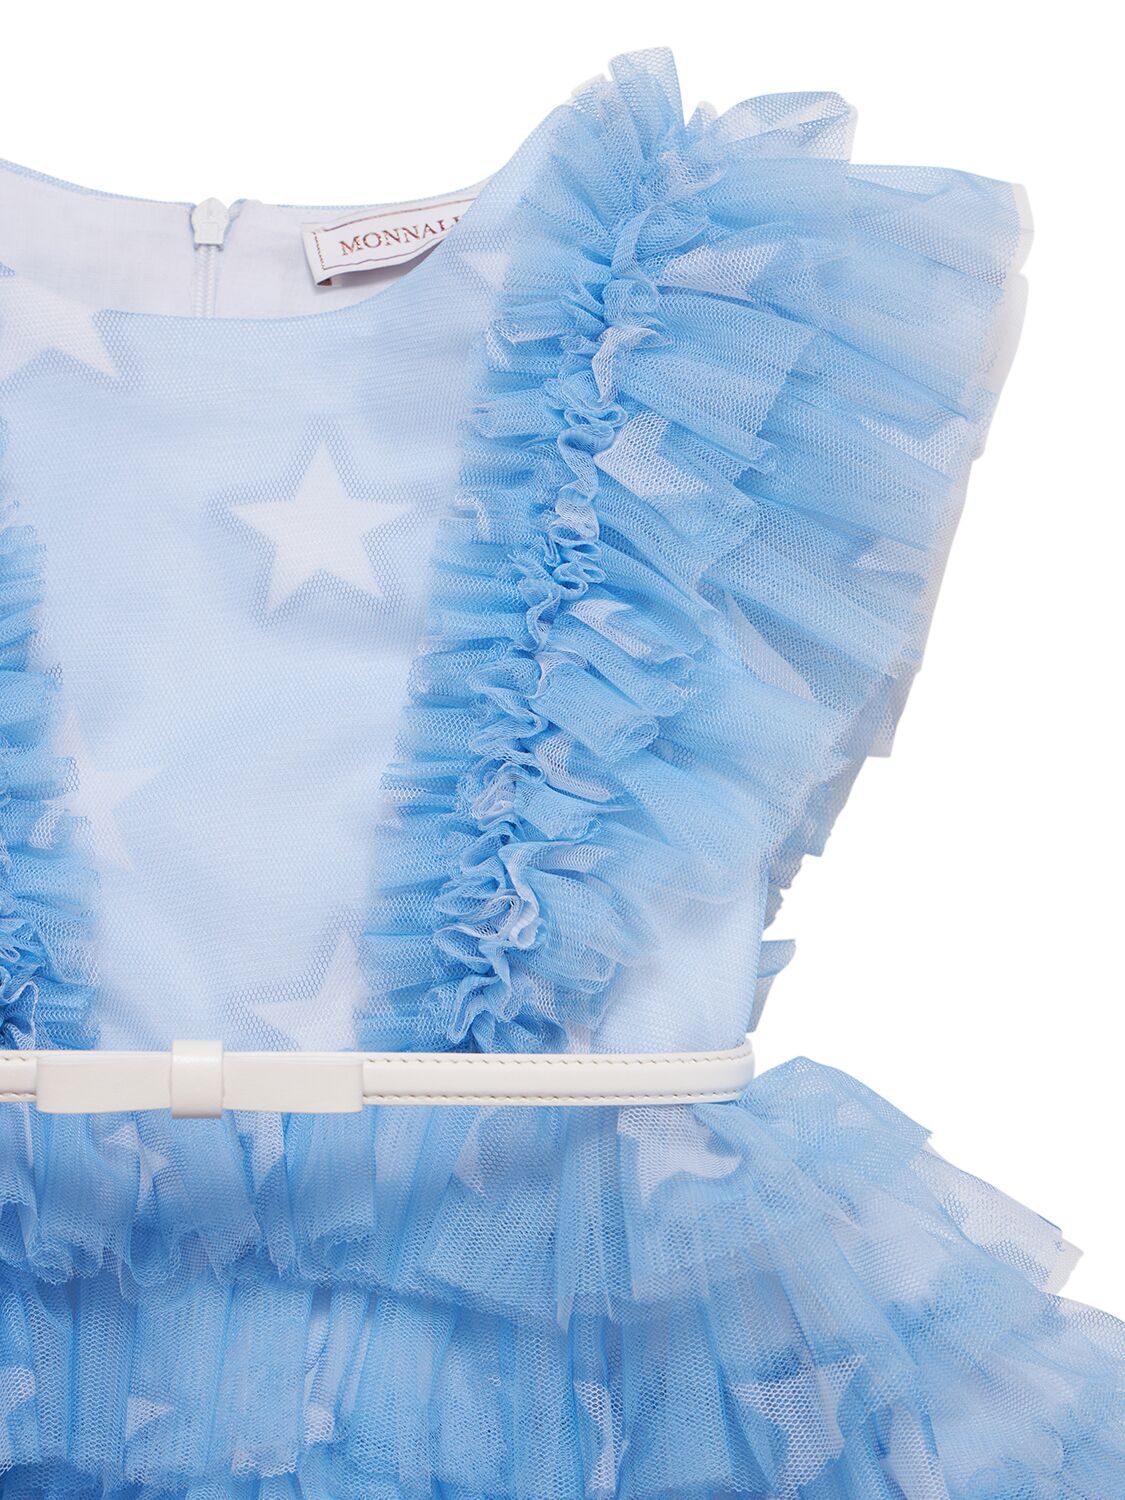 Shop Monnalisa Tulle Dress W/ruffles In Light Blue